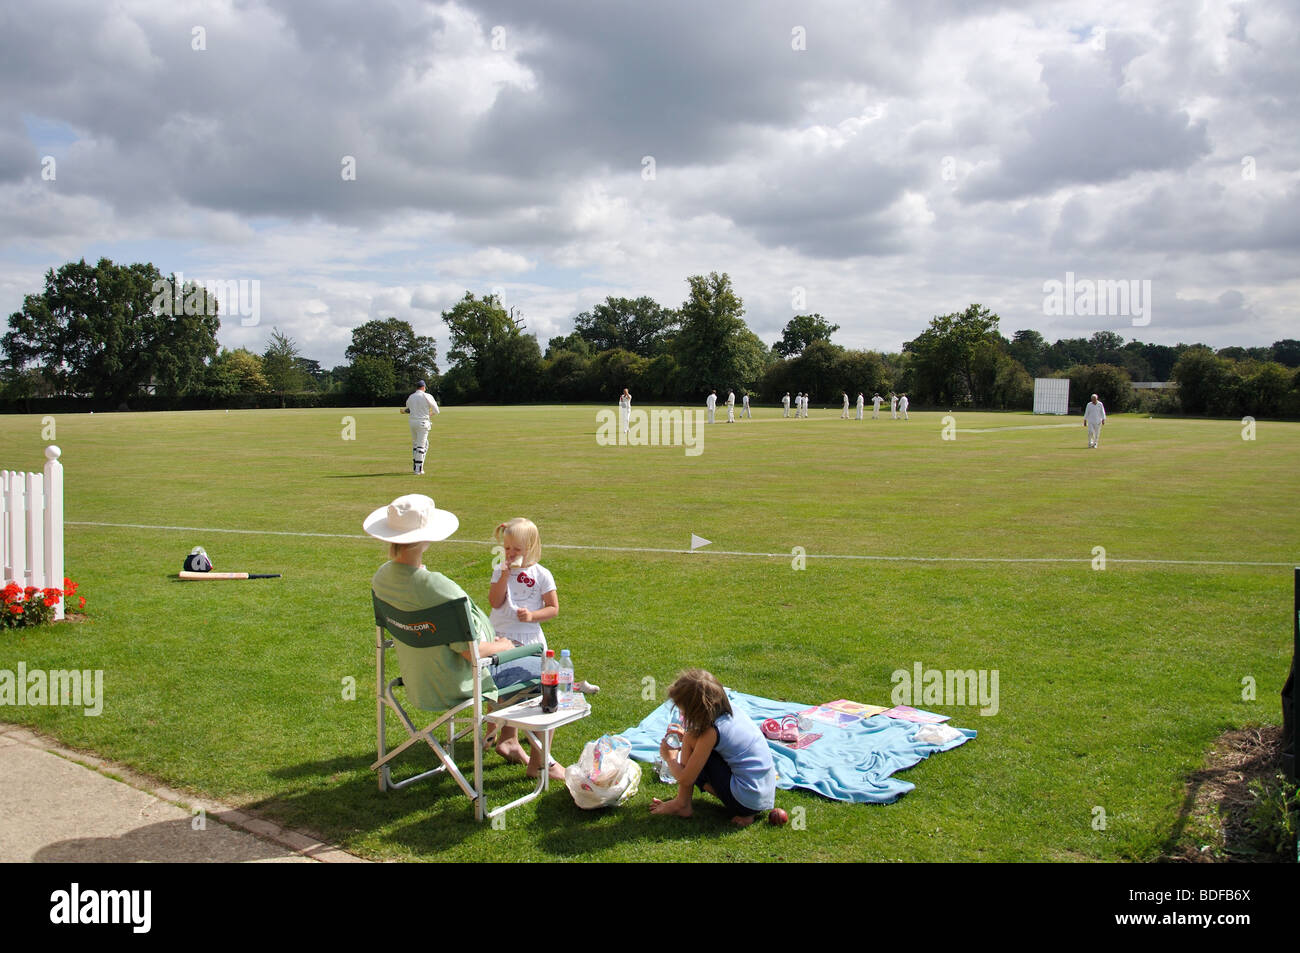 Match de cricket, Verrous Ride Jeu, Sunninghill, Berkshire, Angleterre, Royaume-Uni Banque D'Images